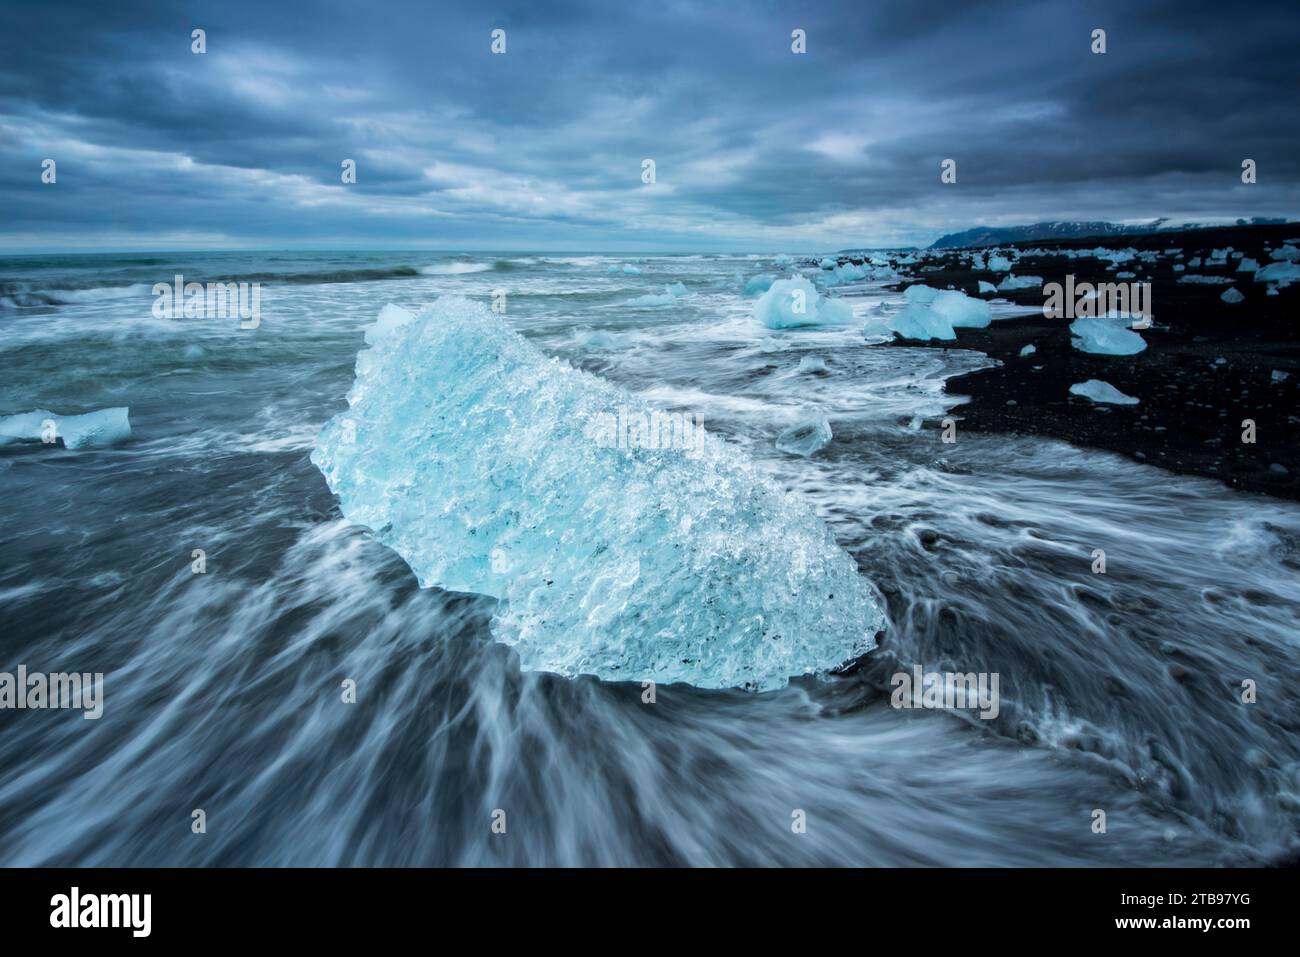 Iceberg de la lagune de Jokulsarlon sur une plage de sable noir ; Islande Banque D'Images